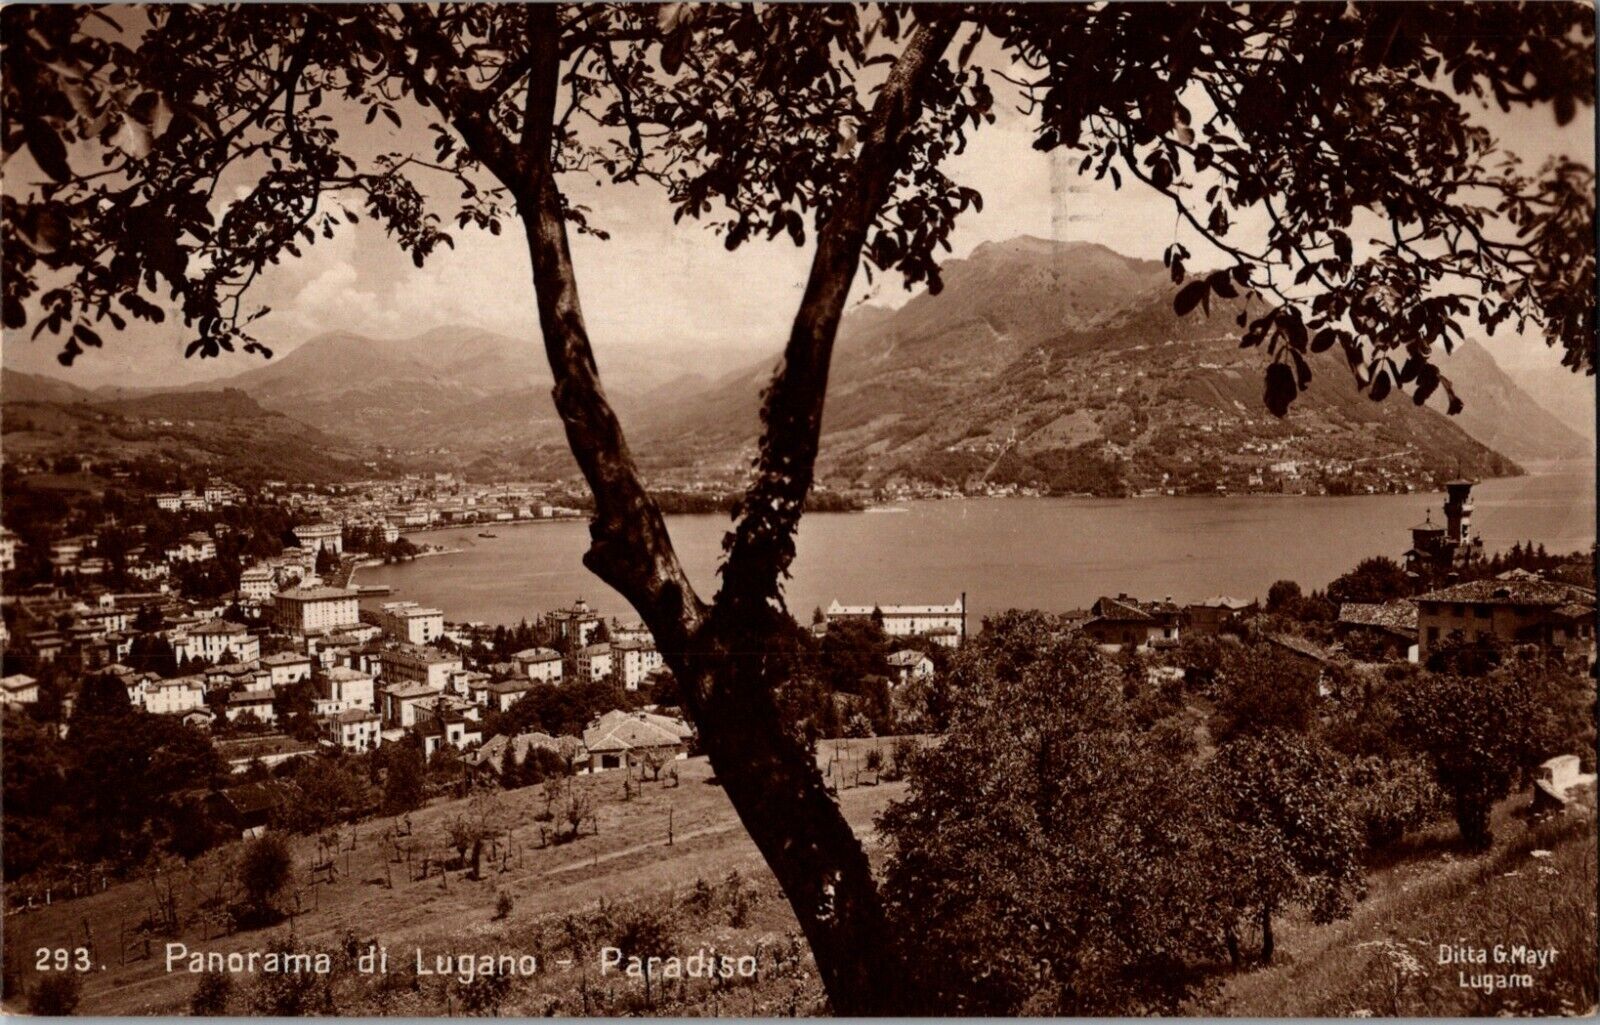 Panorama di Lugano Lake & City Paradiso Switzerland 1924 Postcard RPPC Photo